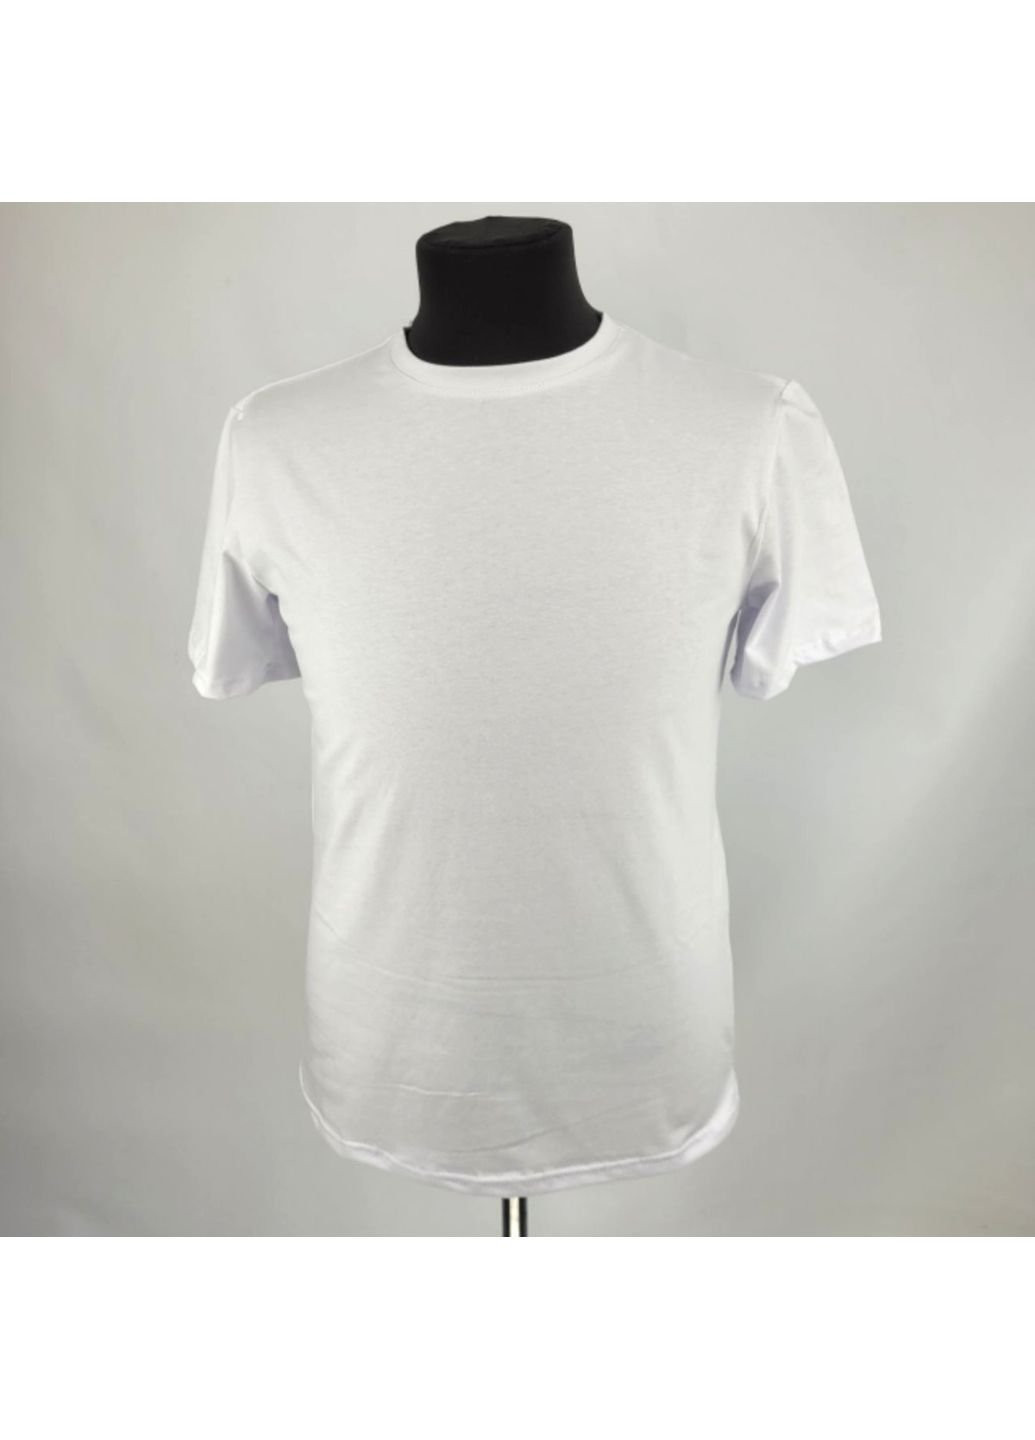 Белая футболка мужская тактическая всу (зсу) 1063 7259 xl белая No Brand